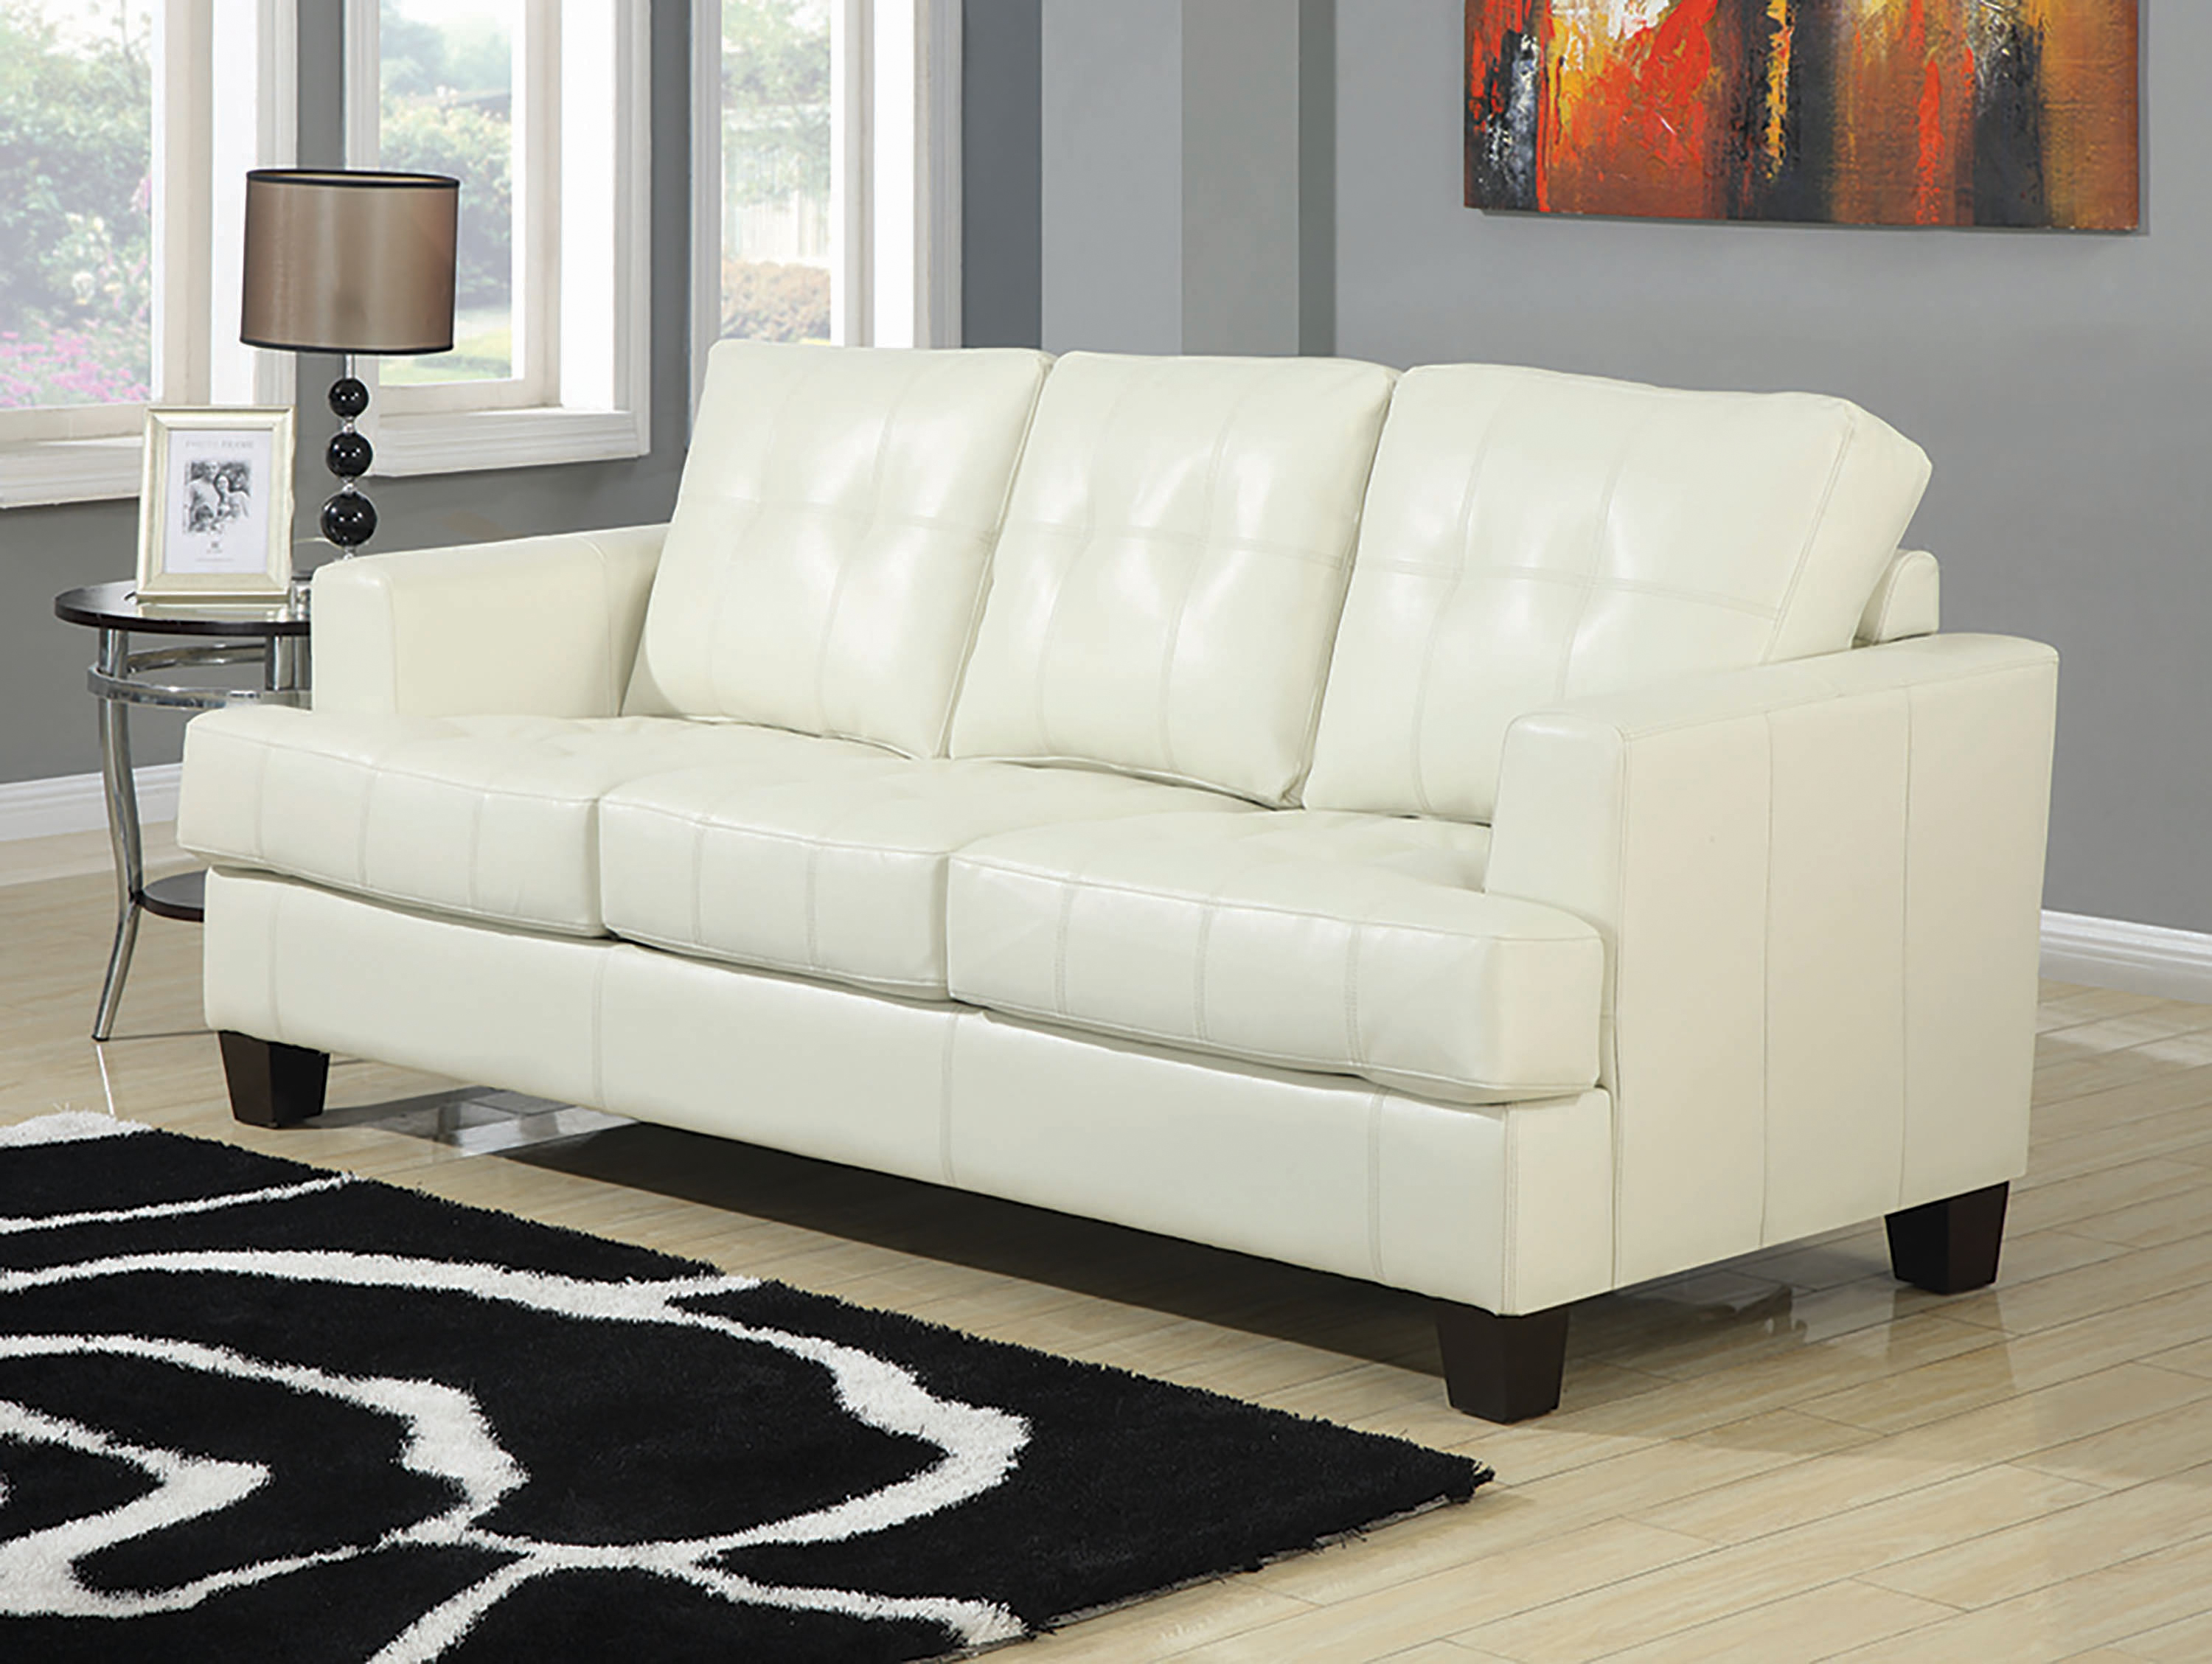 abbyson milton leather sofa cream color